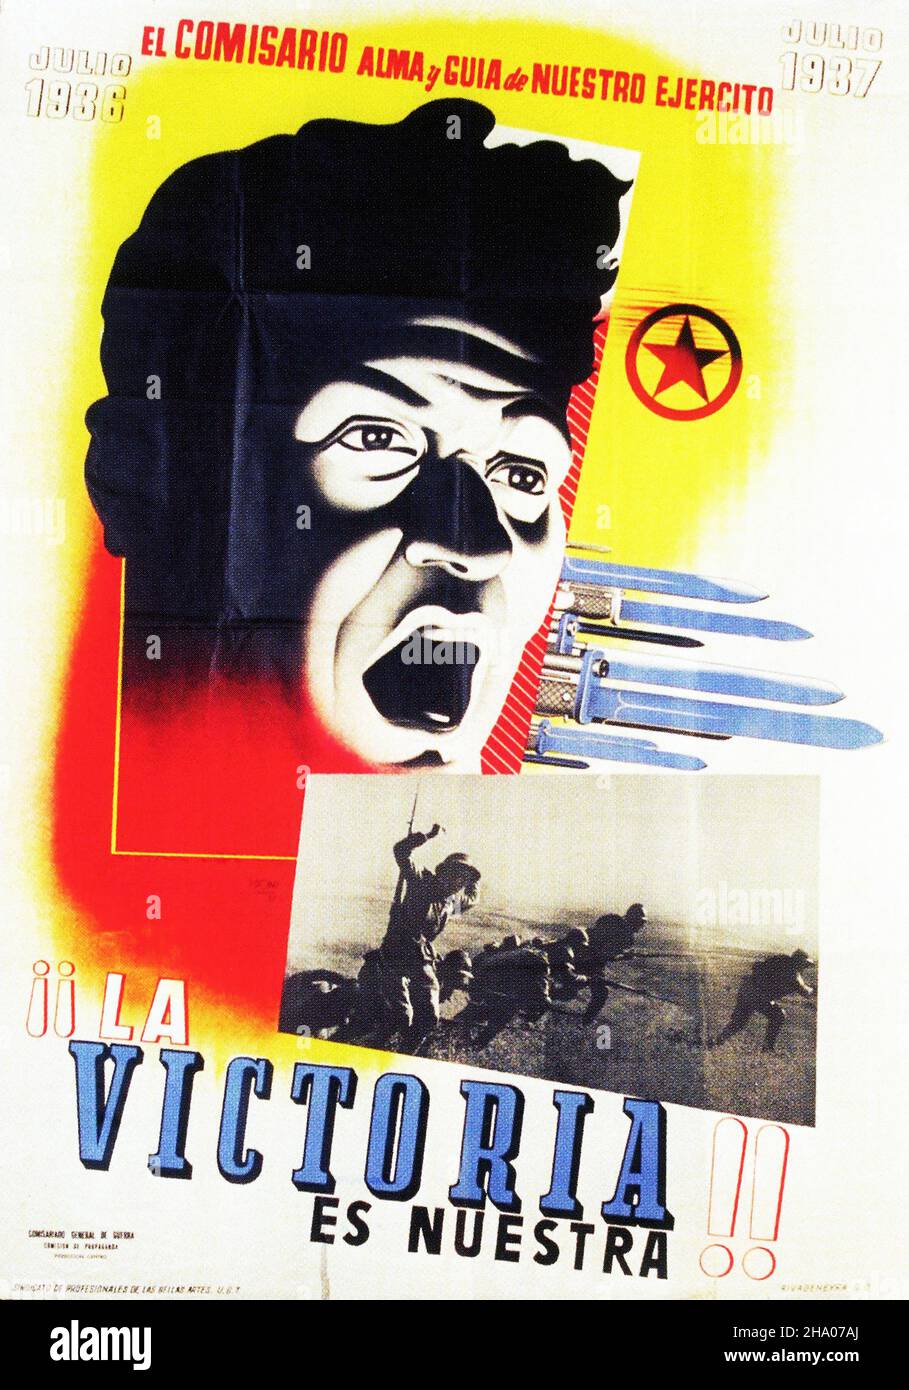 1937 la Victoria es Nuestra - affiche de propagande sur la guerre civile espagnole (Guerra civil Española) Banque D'Images